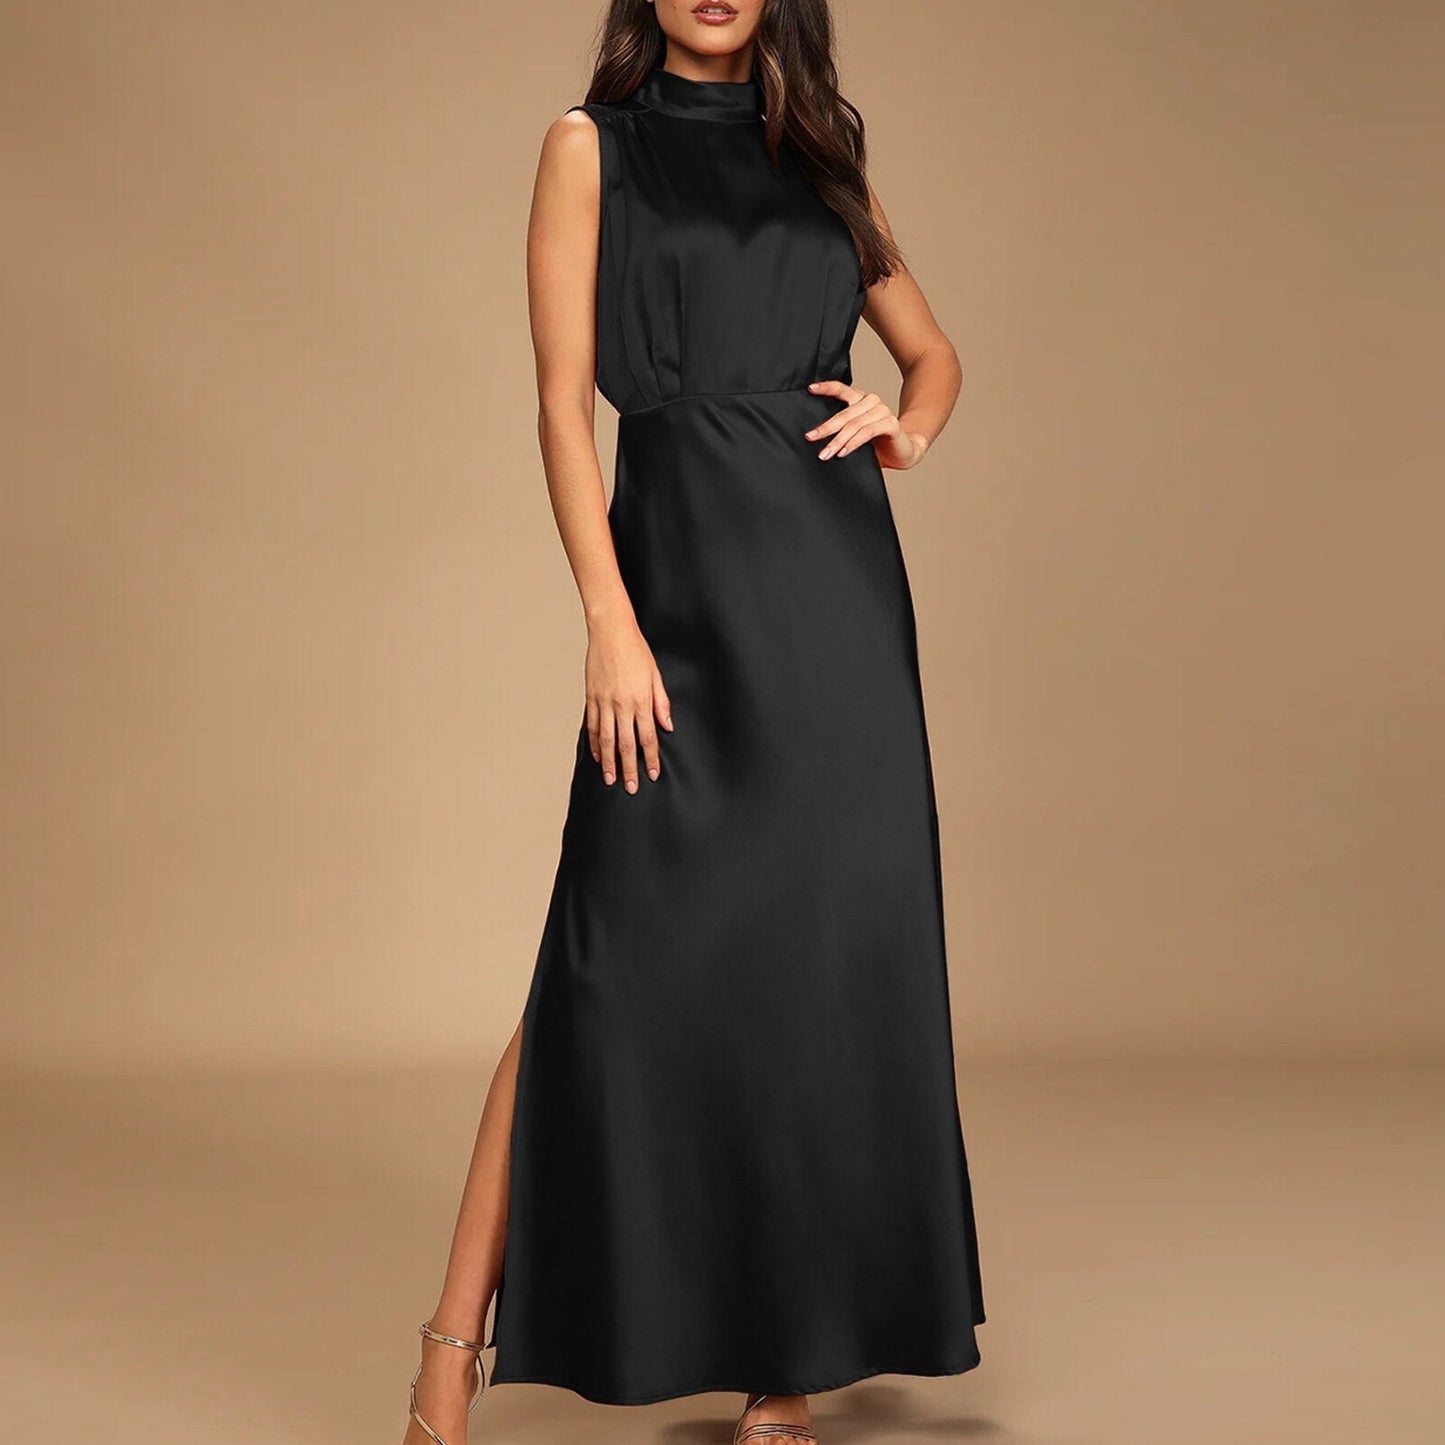 JuliaFashion-Fashion Formal Satin Occasion Maxi Dress